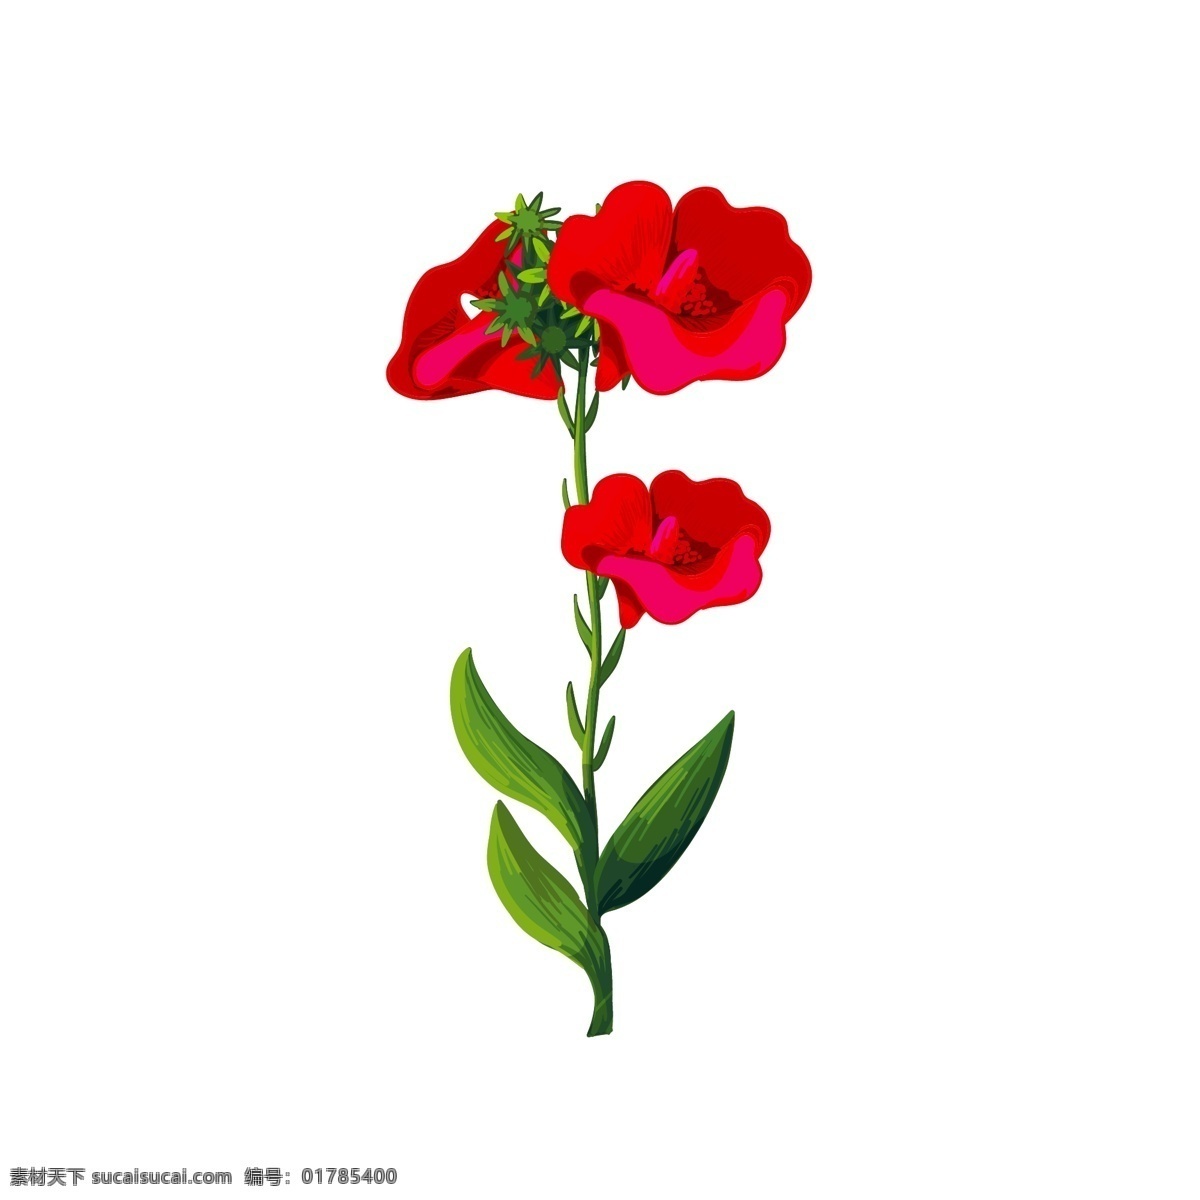 写实 卡通 植物 红色 喇叭 花卉 绿叶 花朵 写实风